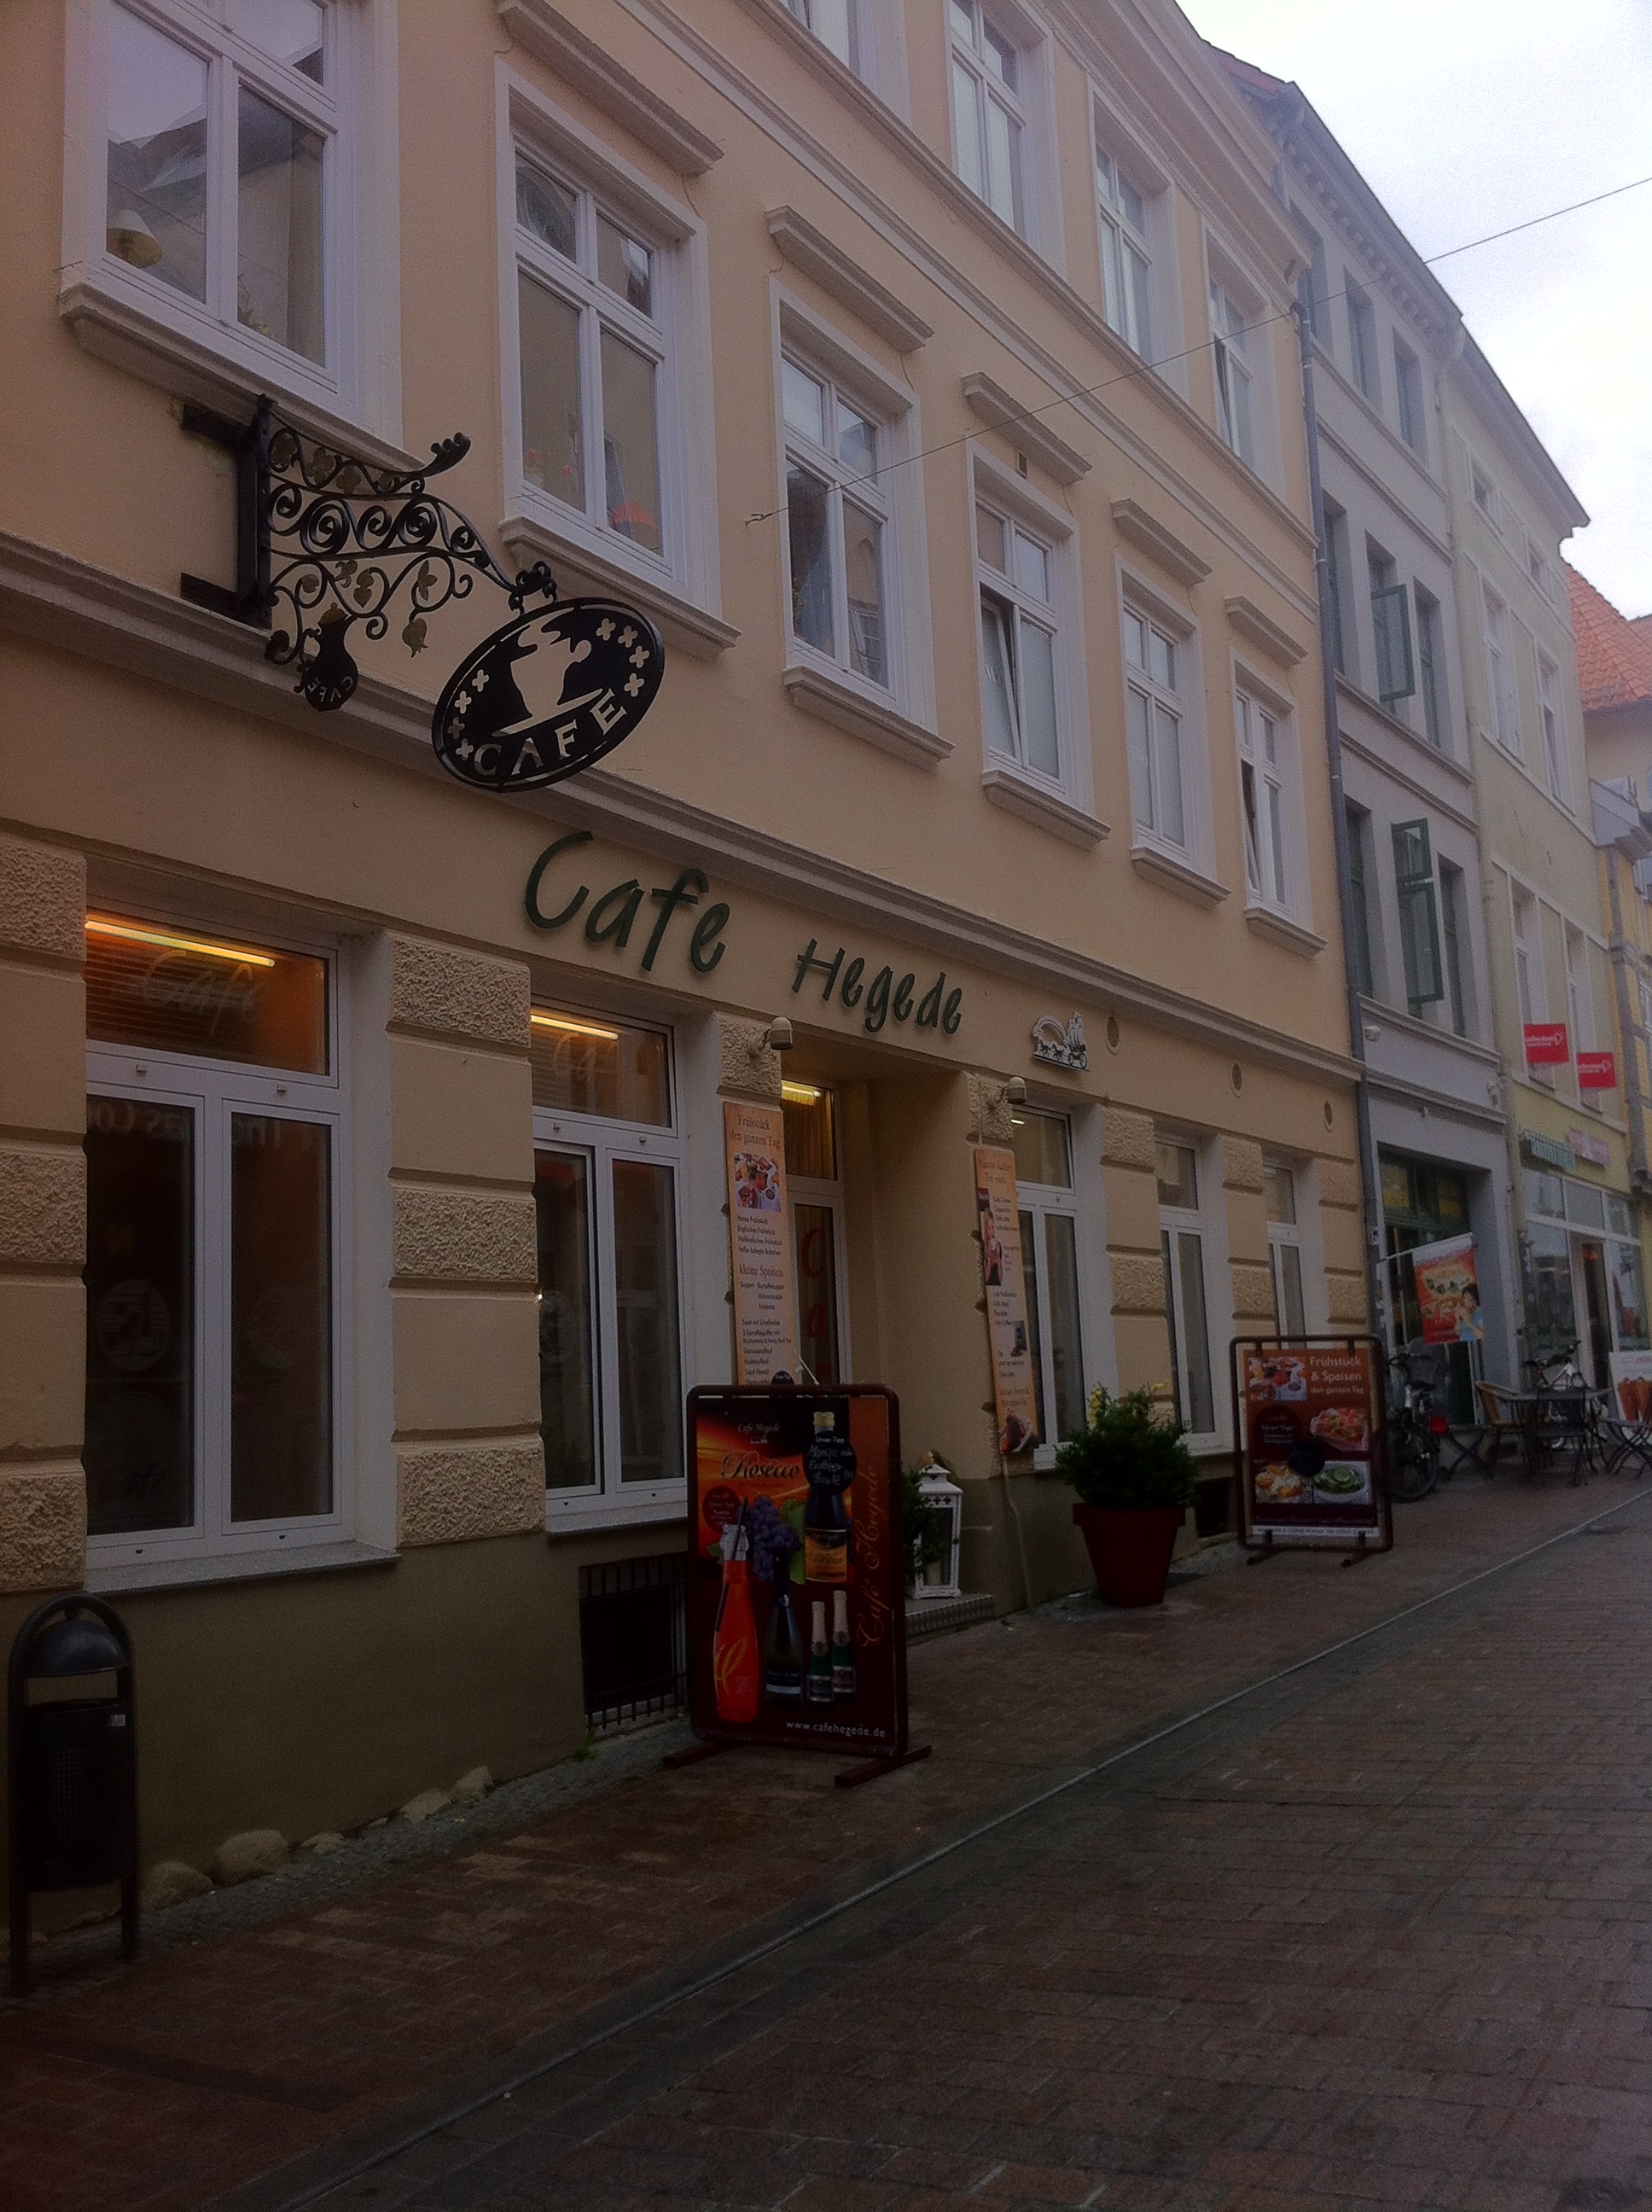 Bild 2 Cafe Hegede Inh. Daniel Vogt in Wismar